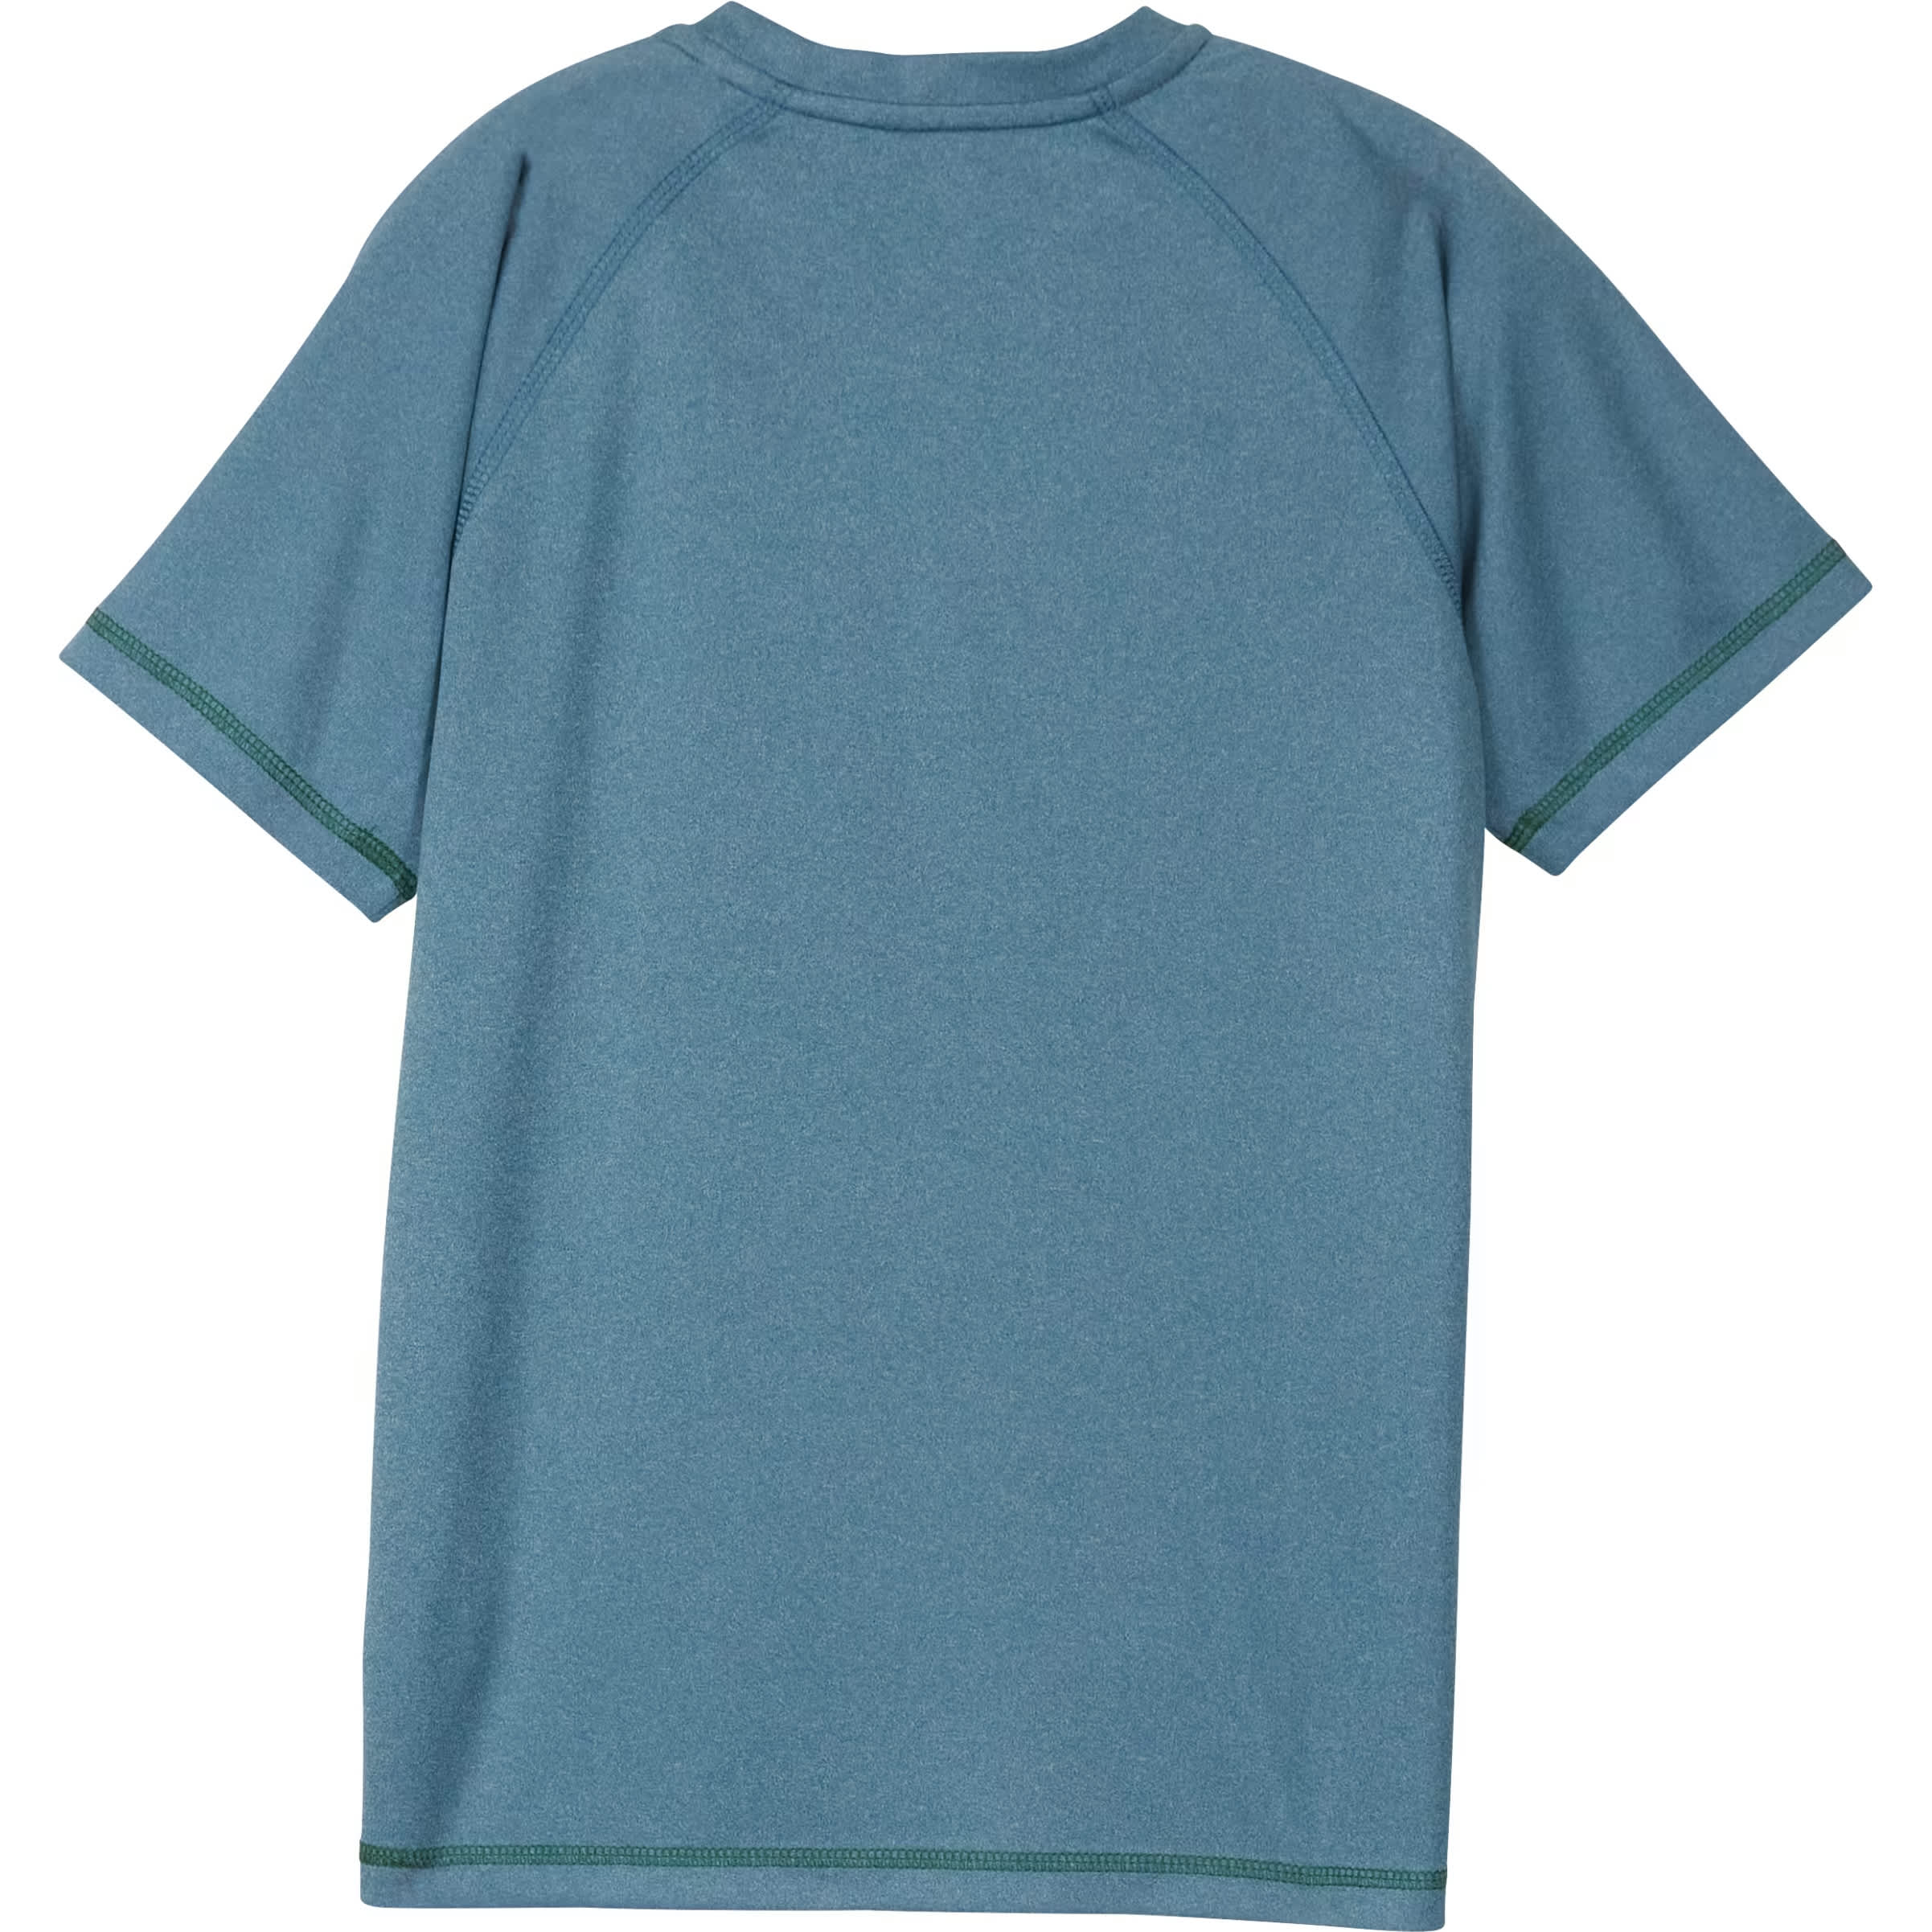 Outdoor Kids® Children’s Performance Raglan Short-Sleeve T-Shirt